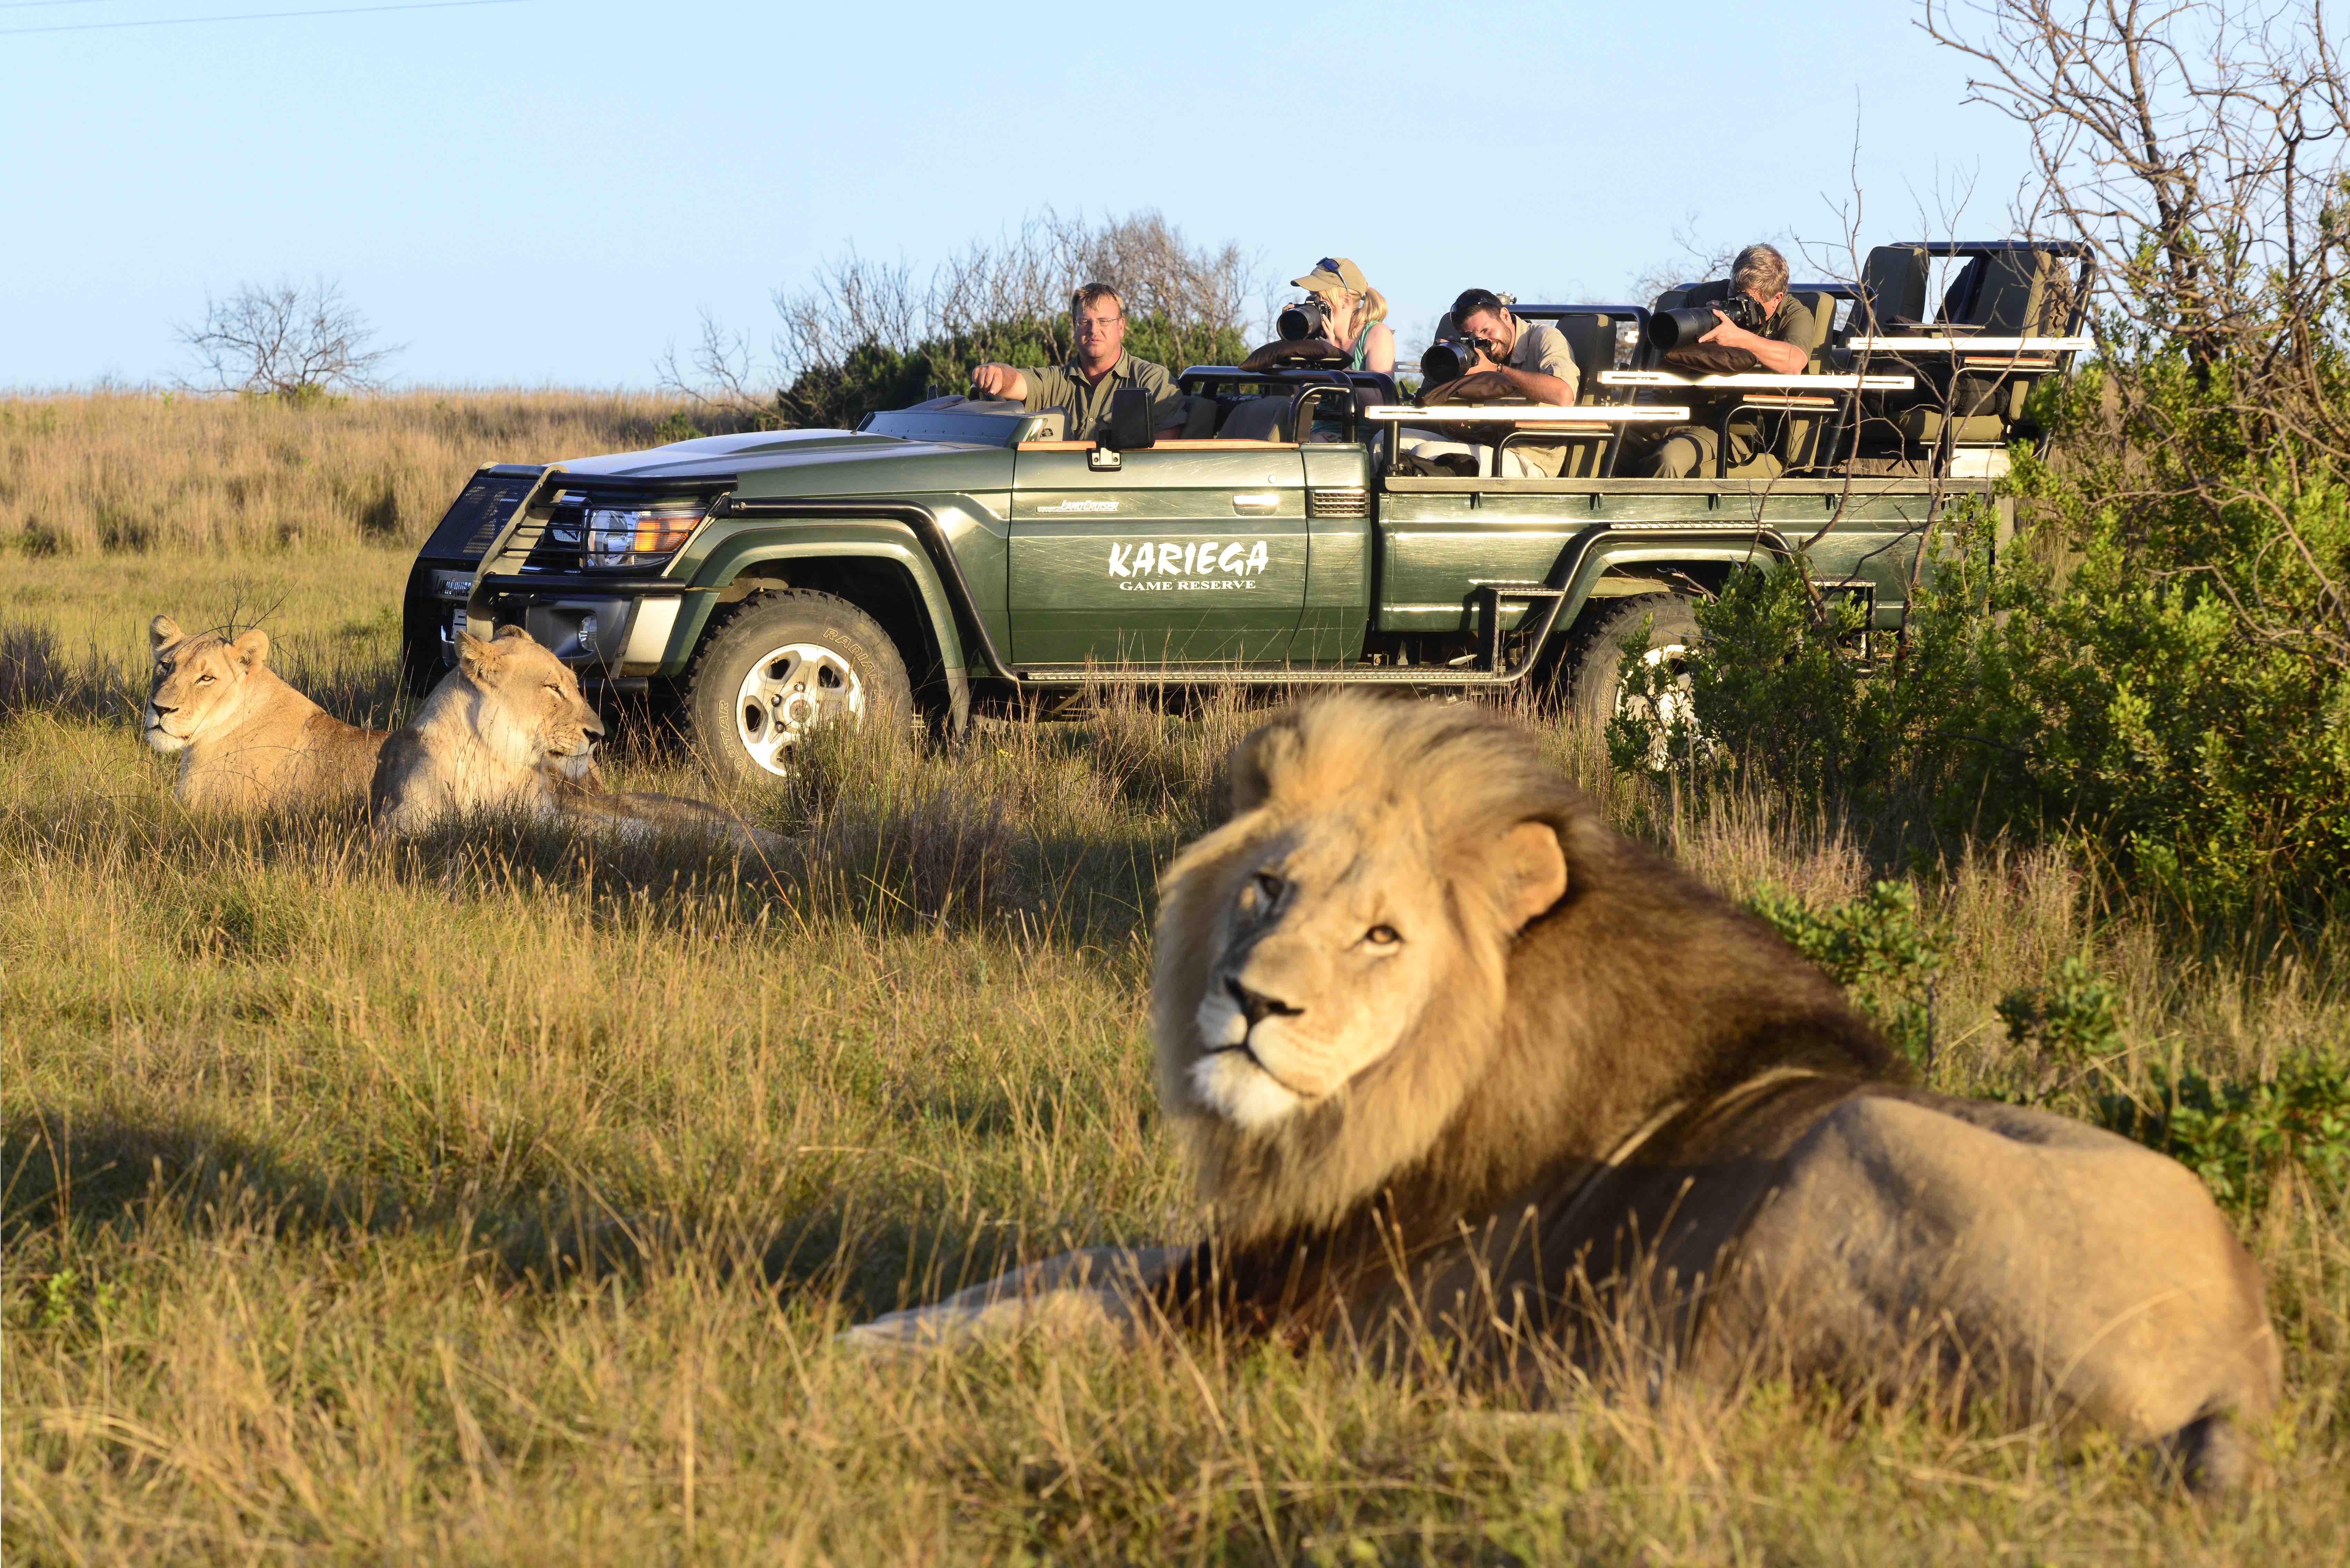 kariega safari park south africa